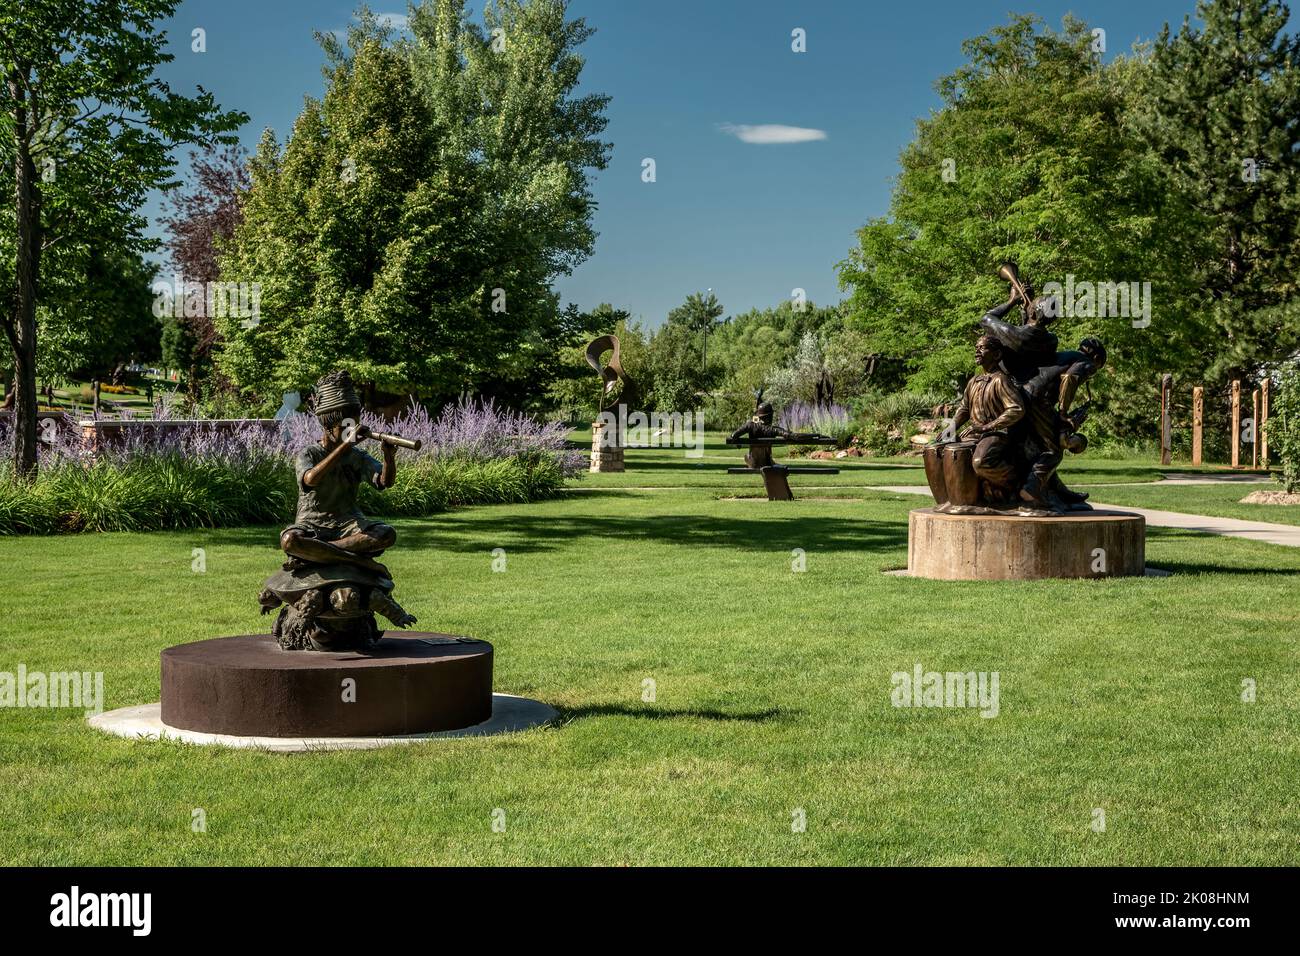 Sculptures on lawn, Benson Sculpture Garden, Loveland, Colorado USA Stock Photo